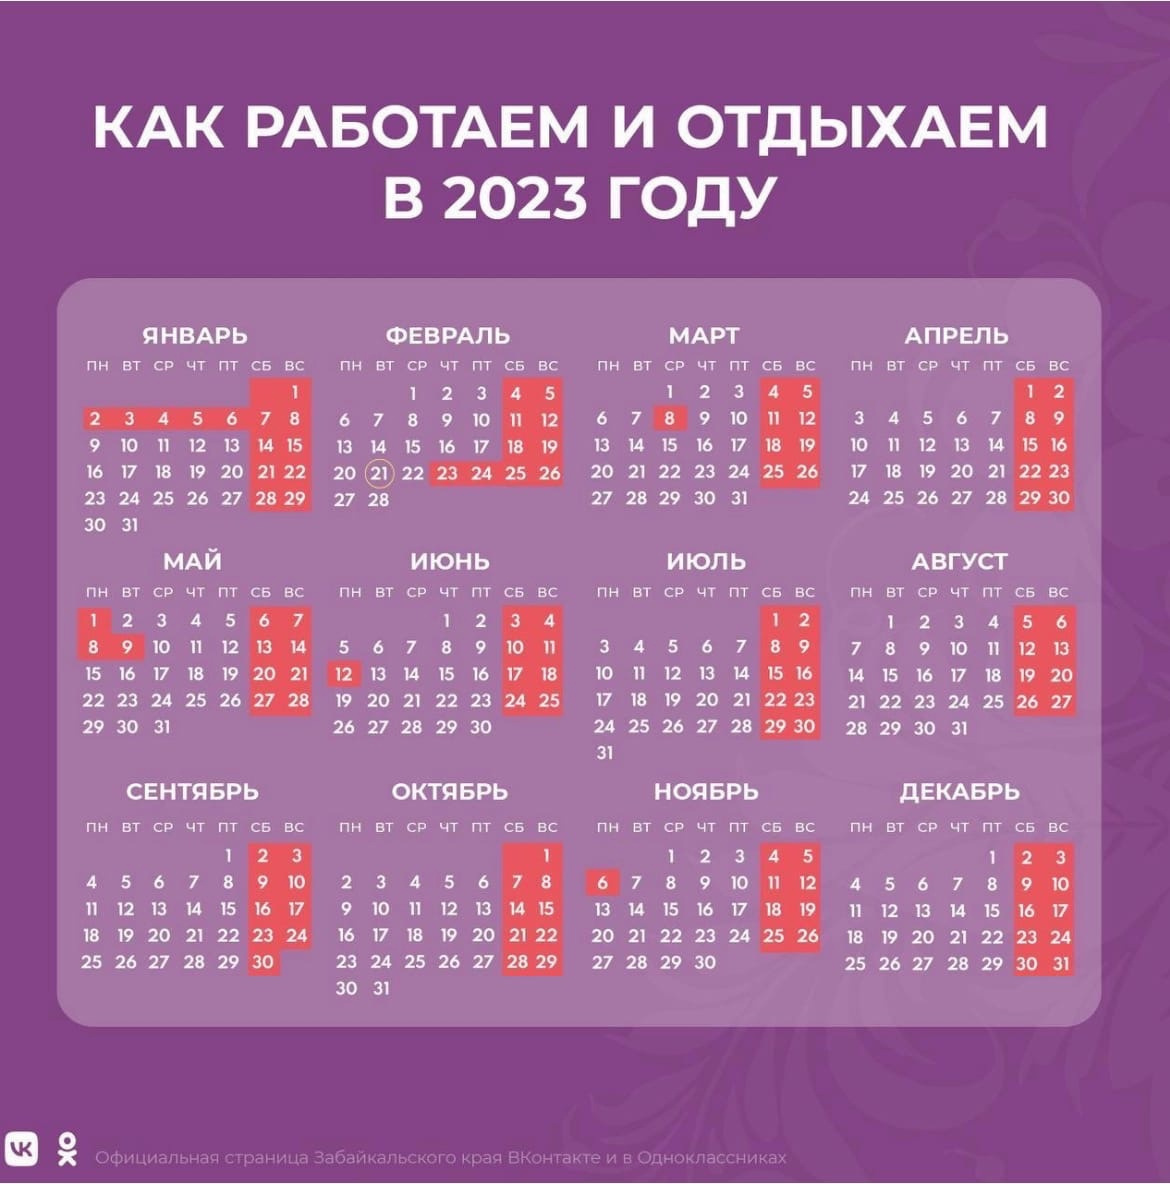 Календарь выходных дней 2023 года. Календарь праздников. Рабочие дни в феврале. Выходные в феврале. Отдыхаем в феврале 2023.